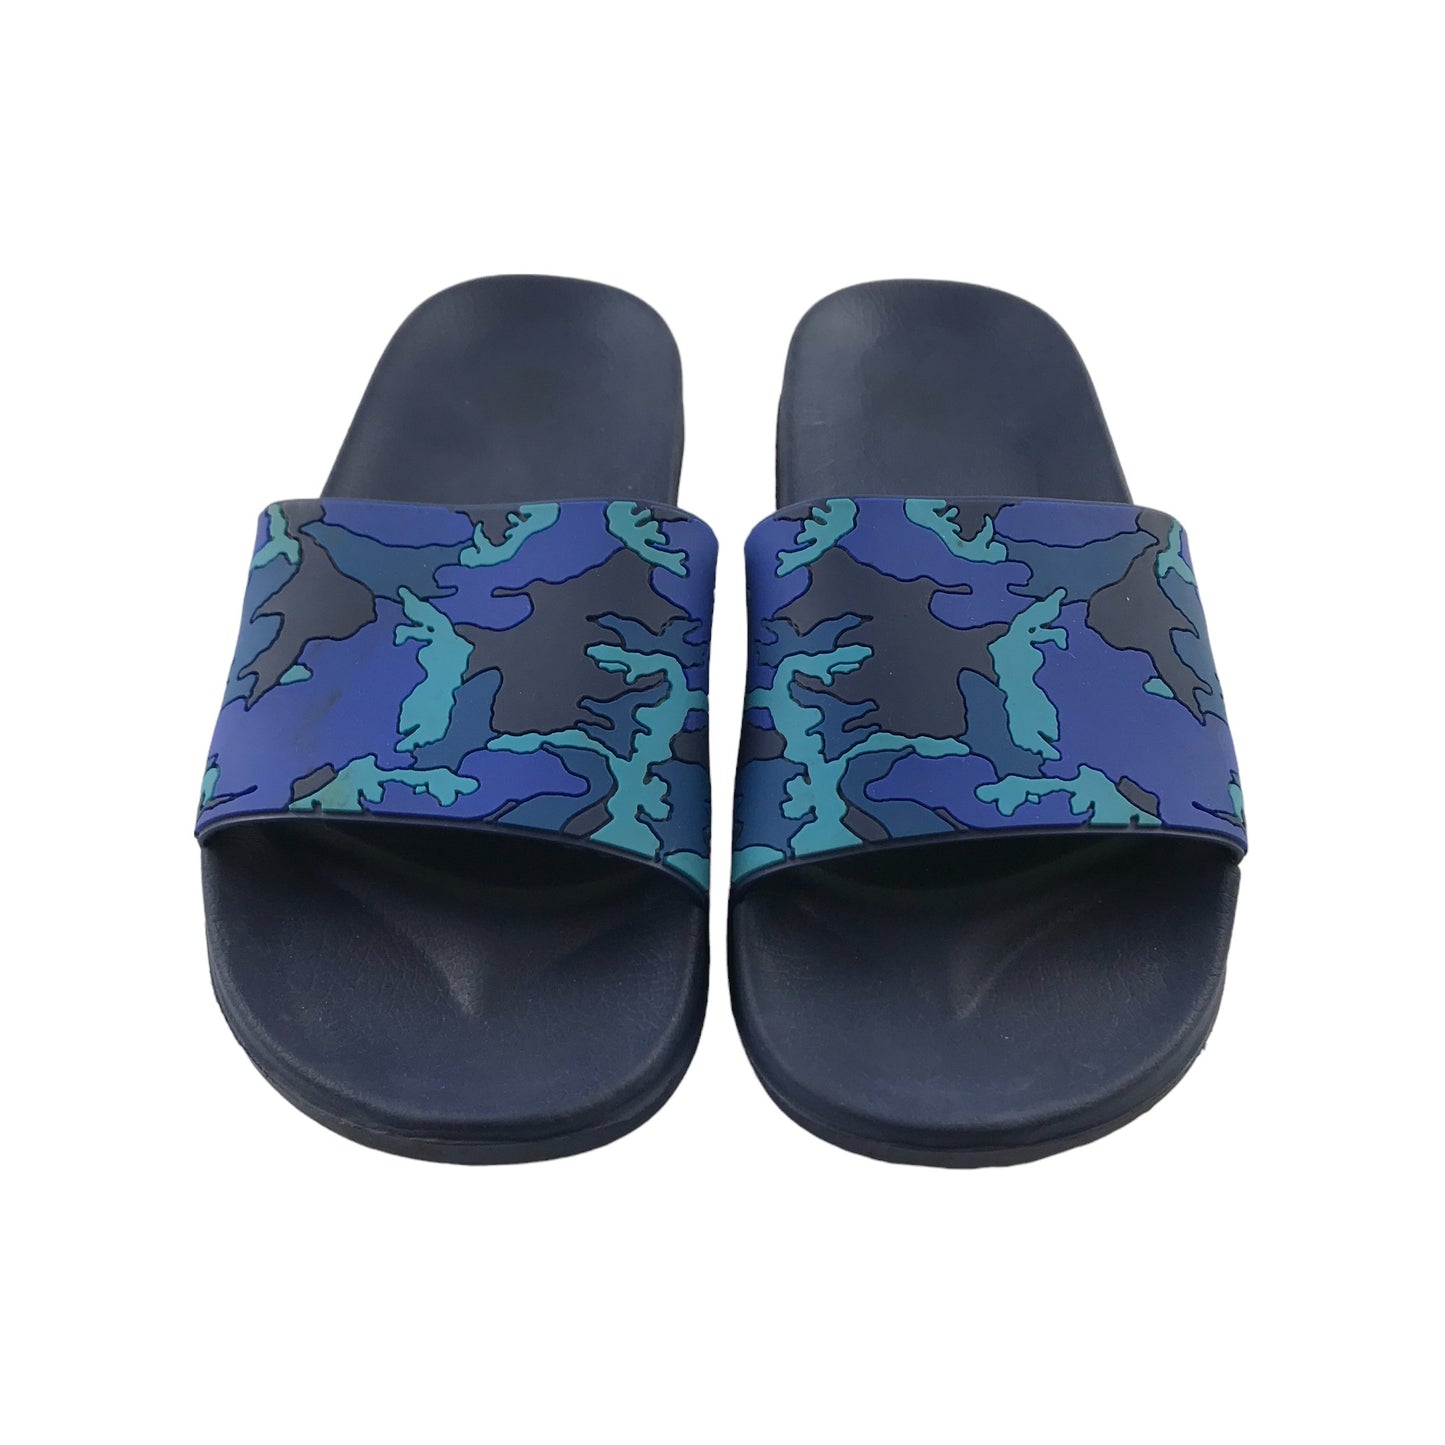 Sliders Shoe Size 5 Blue Camo Strap Sandals